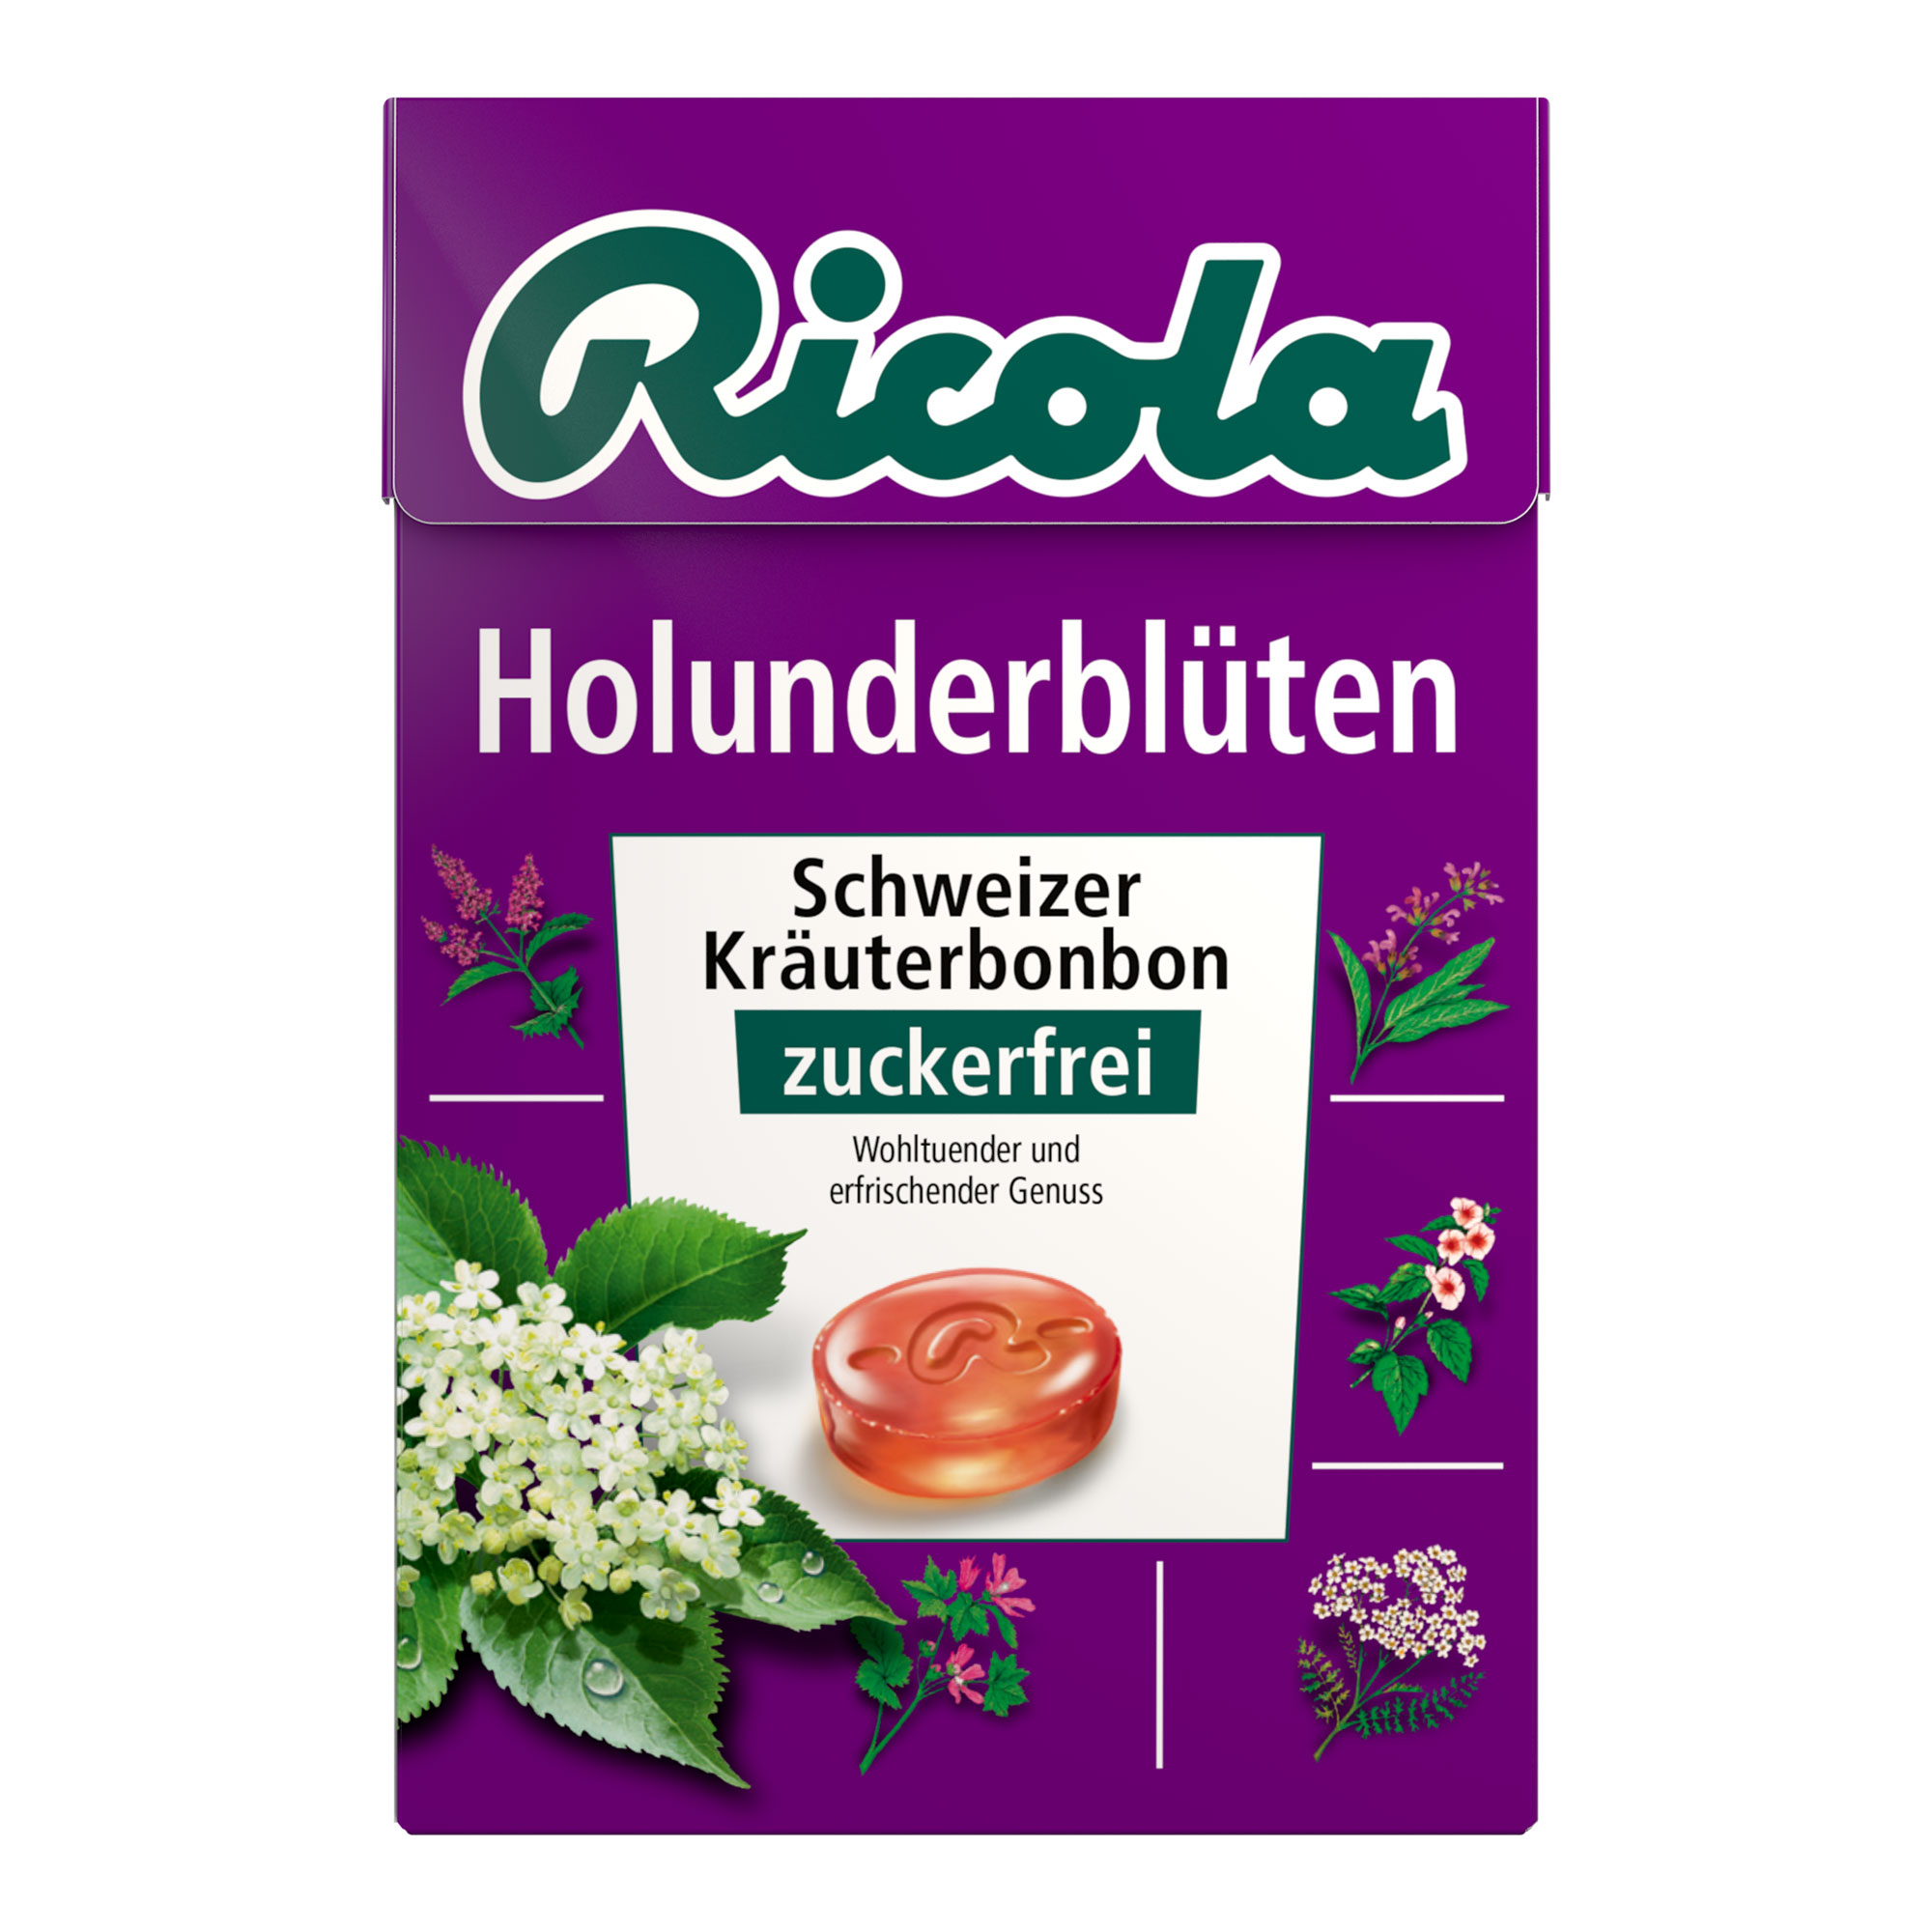 Schweizer Kräuterbonbon mit süßem Geschmack nach Holunderblüten. Zuckerfrei.